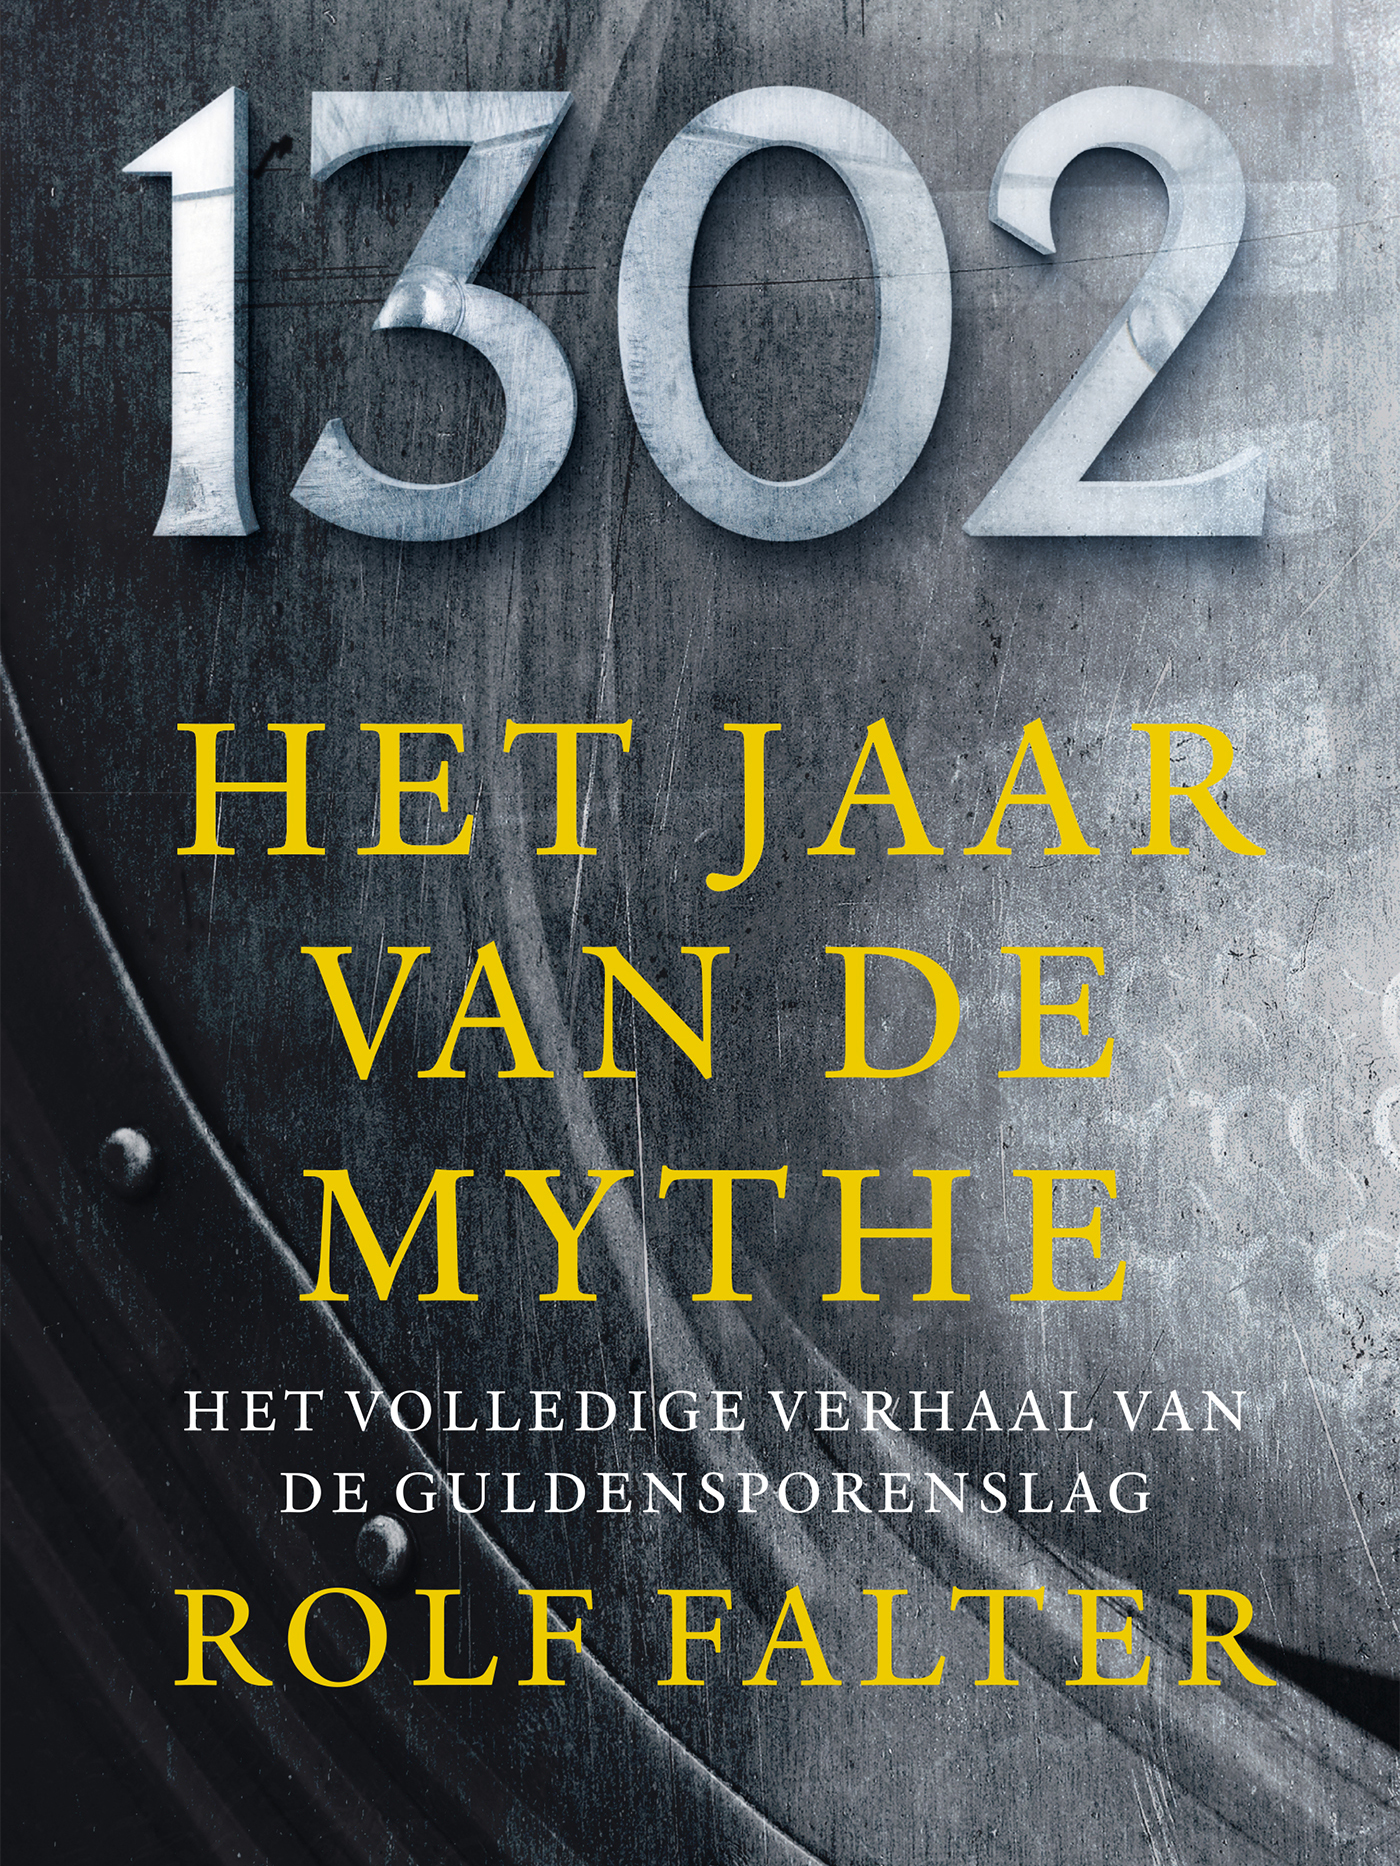 Rolf Falter - 1302, Het jaar van de mythe